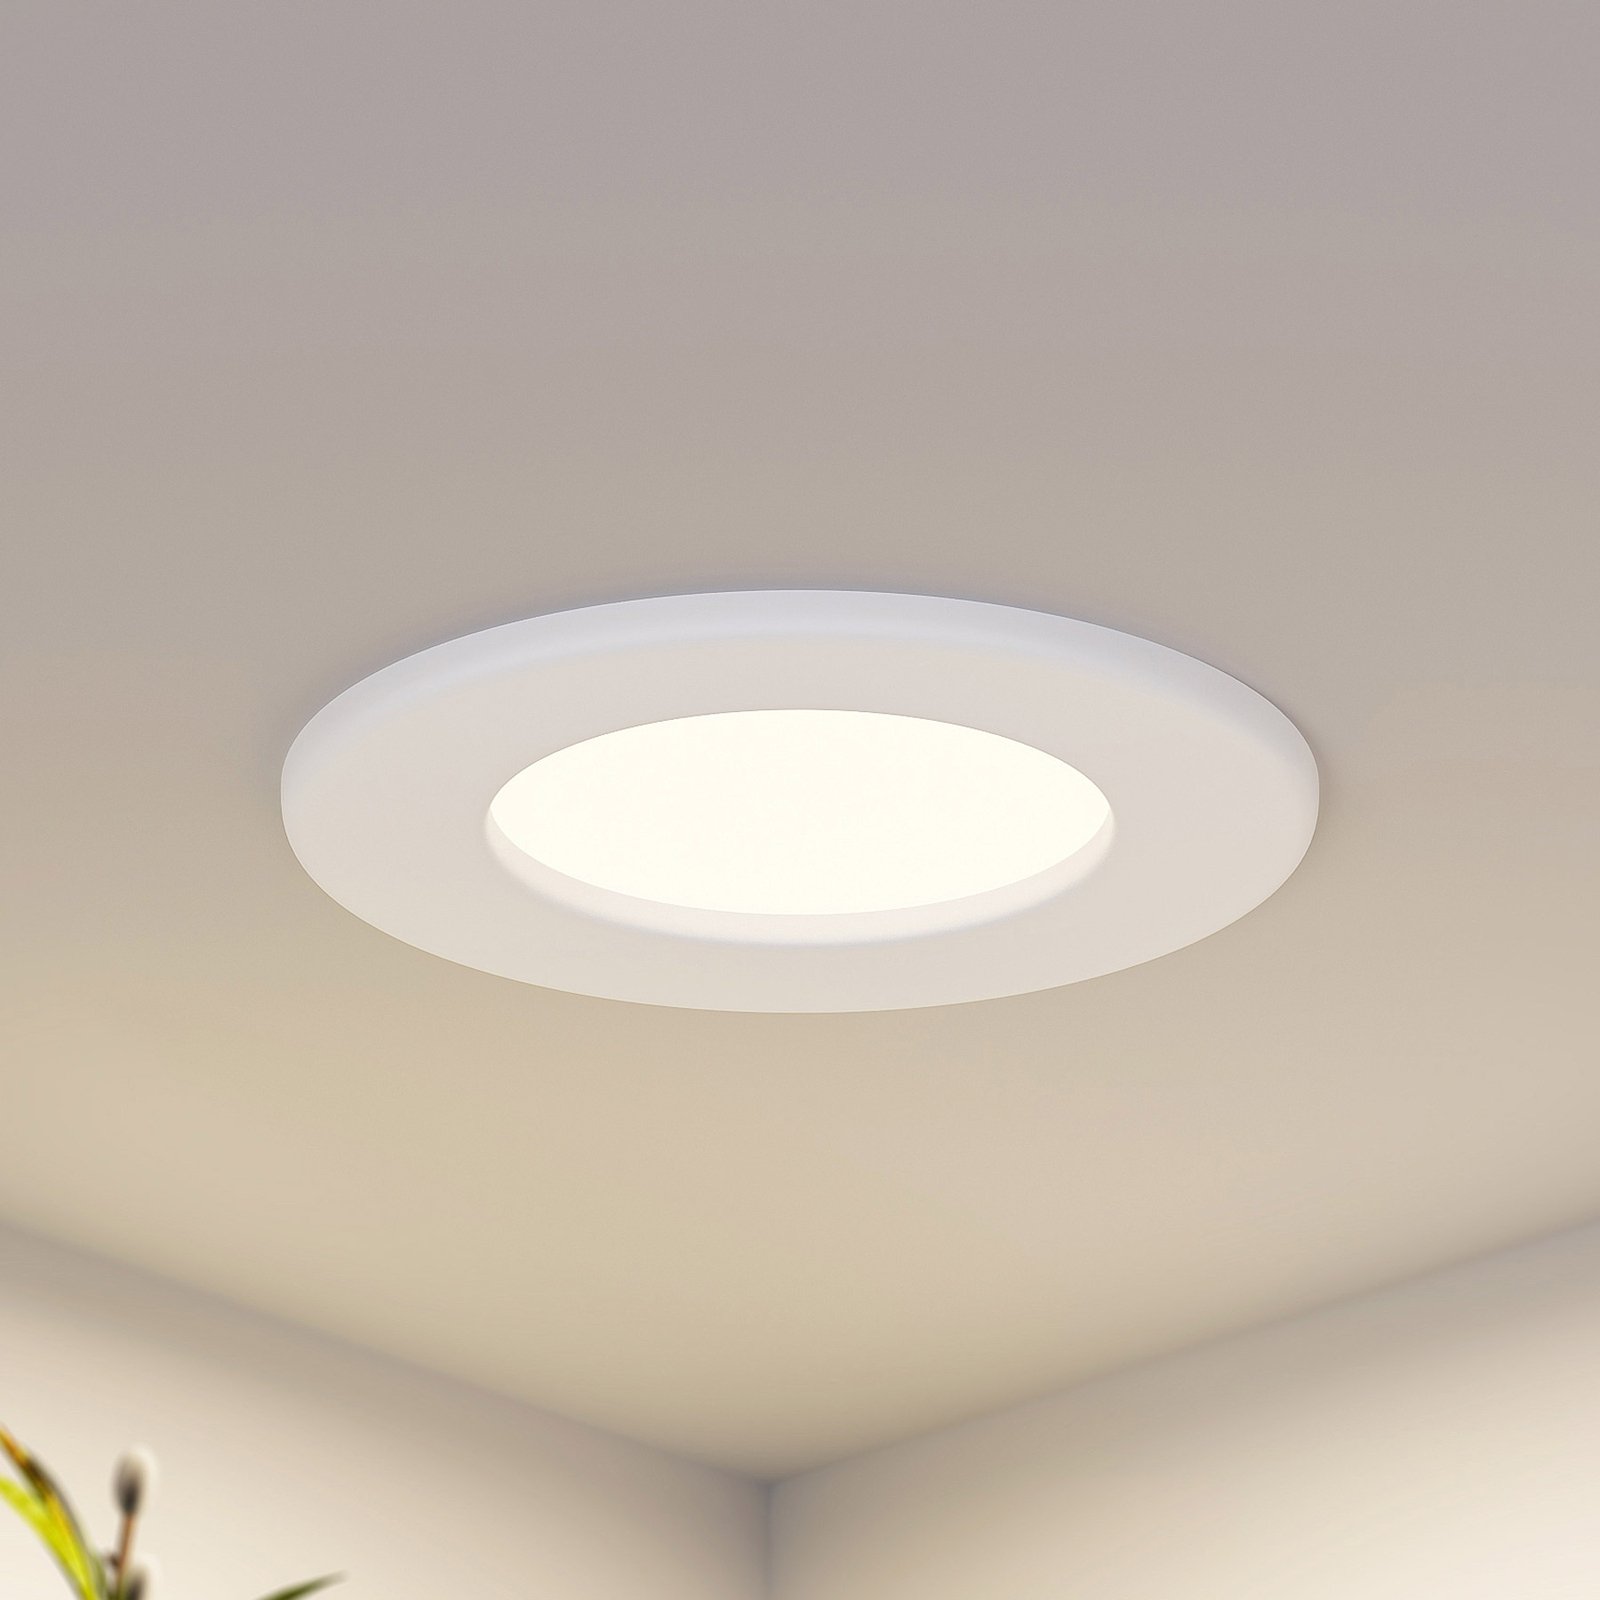 Prios Cadance LED-Einbaulampe, weiß, 11,5 cm